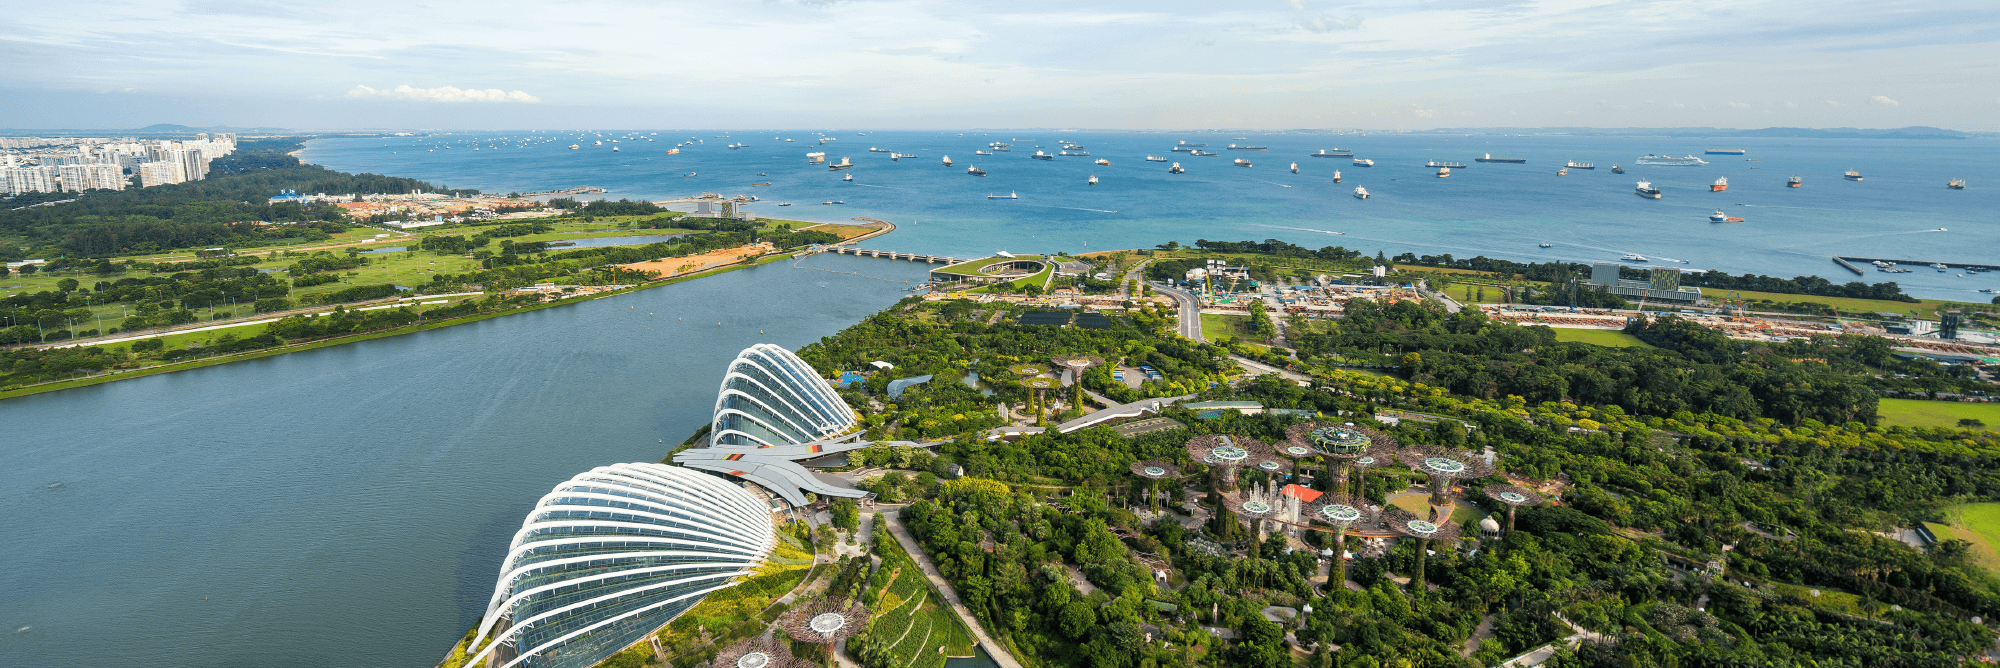 Singapore landscape with blue ocean